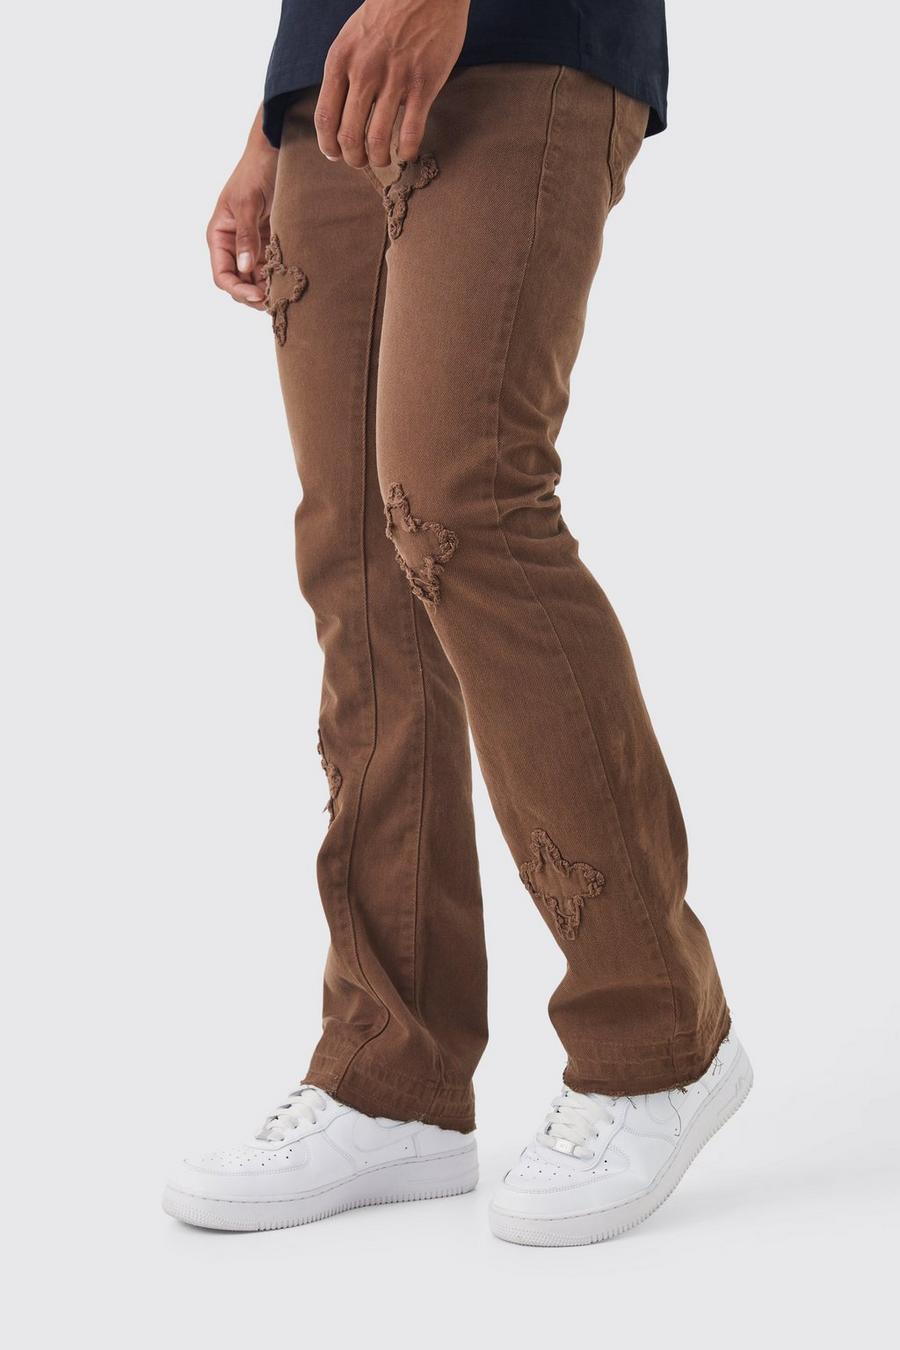 Jeans Slim Fit in denim rigido sovratinti con applique a zampa e inserti, Coffee marrone